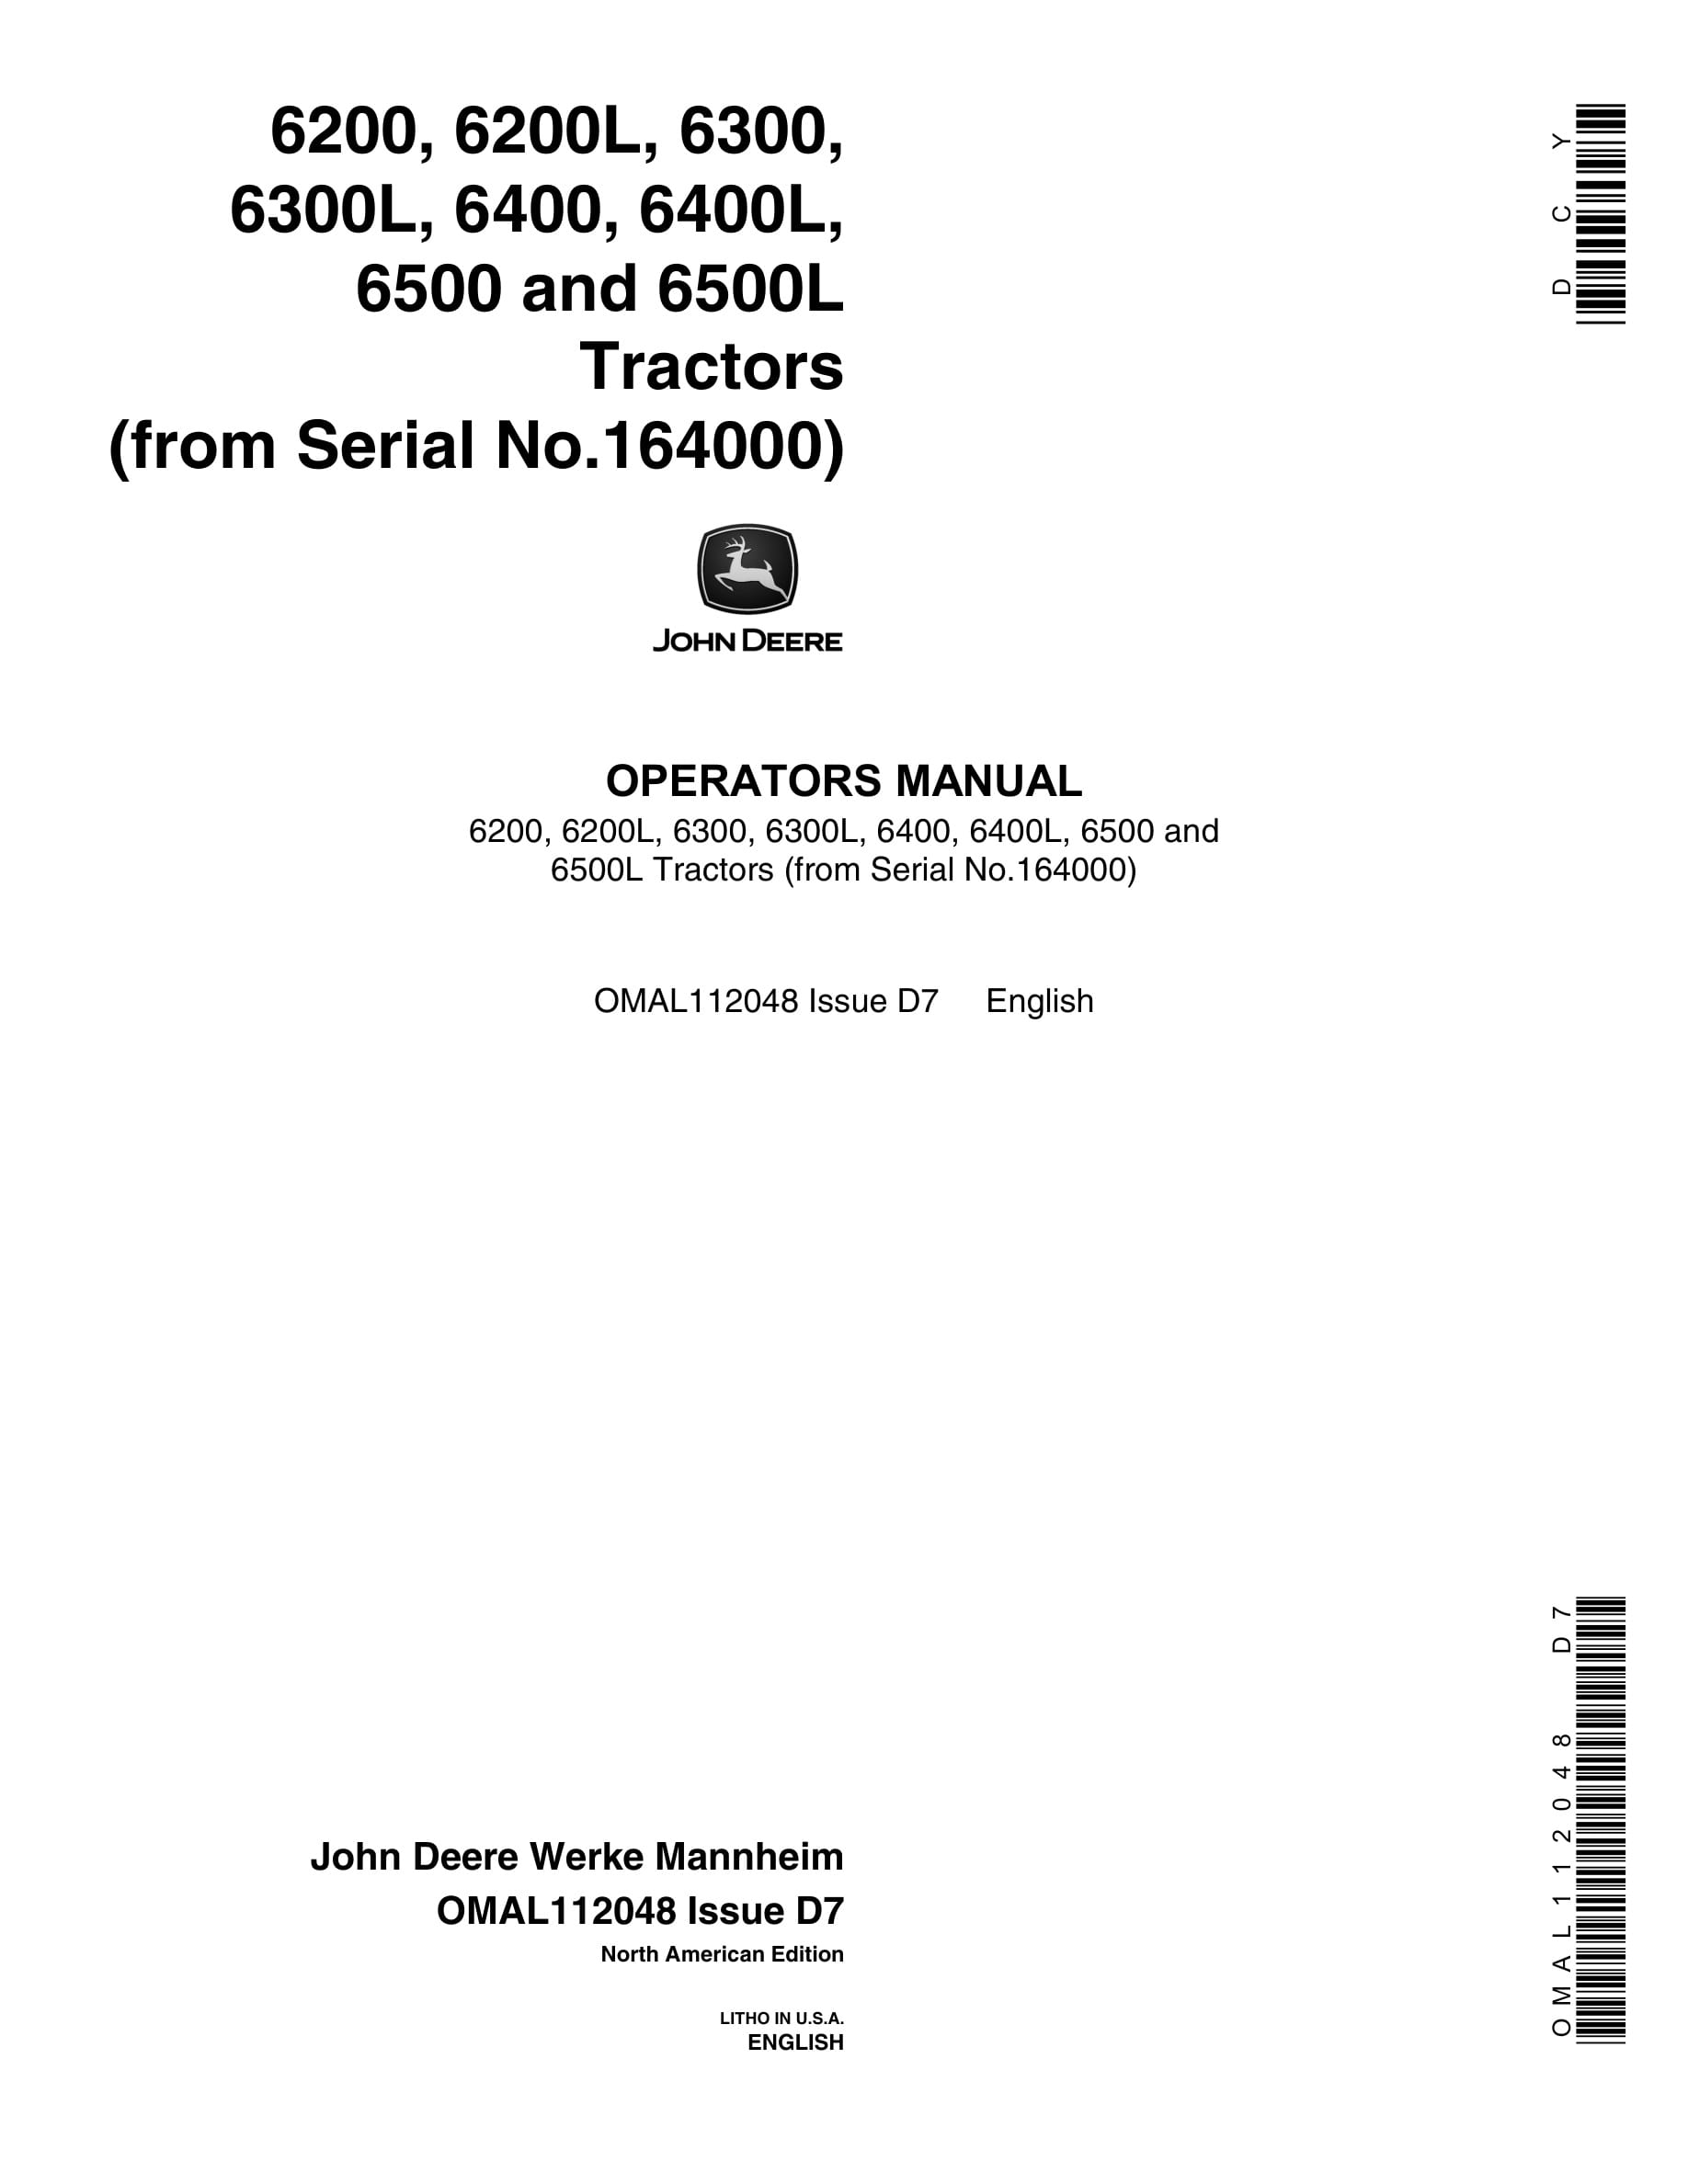 John Deere 6200 6200l 6300 6300l 6400 6400l 6500 6500l Tractors Operator Manuals OMAL112048-1